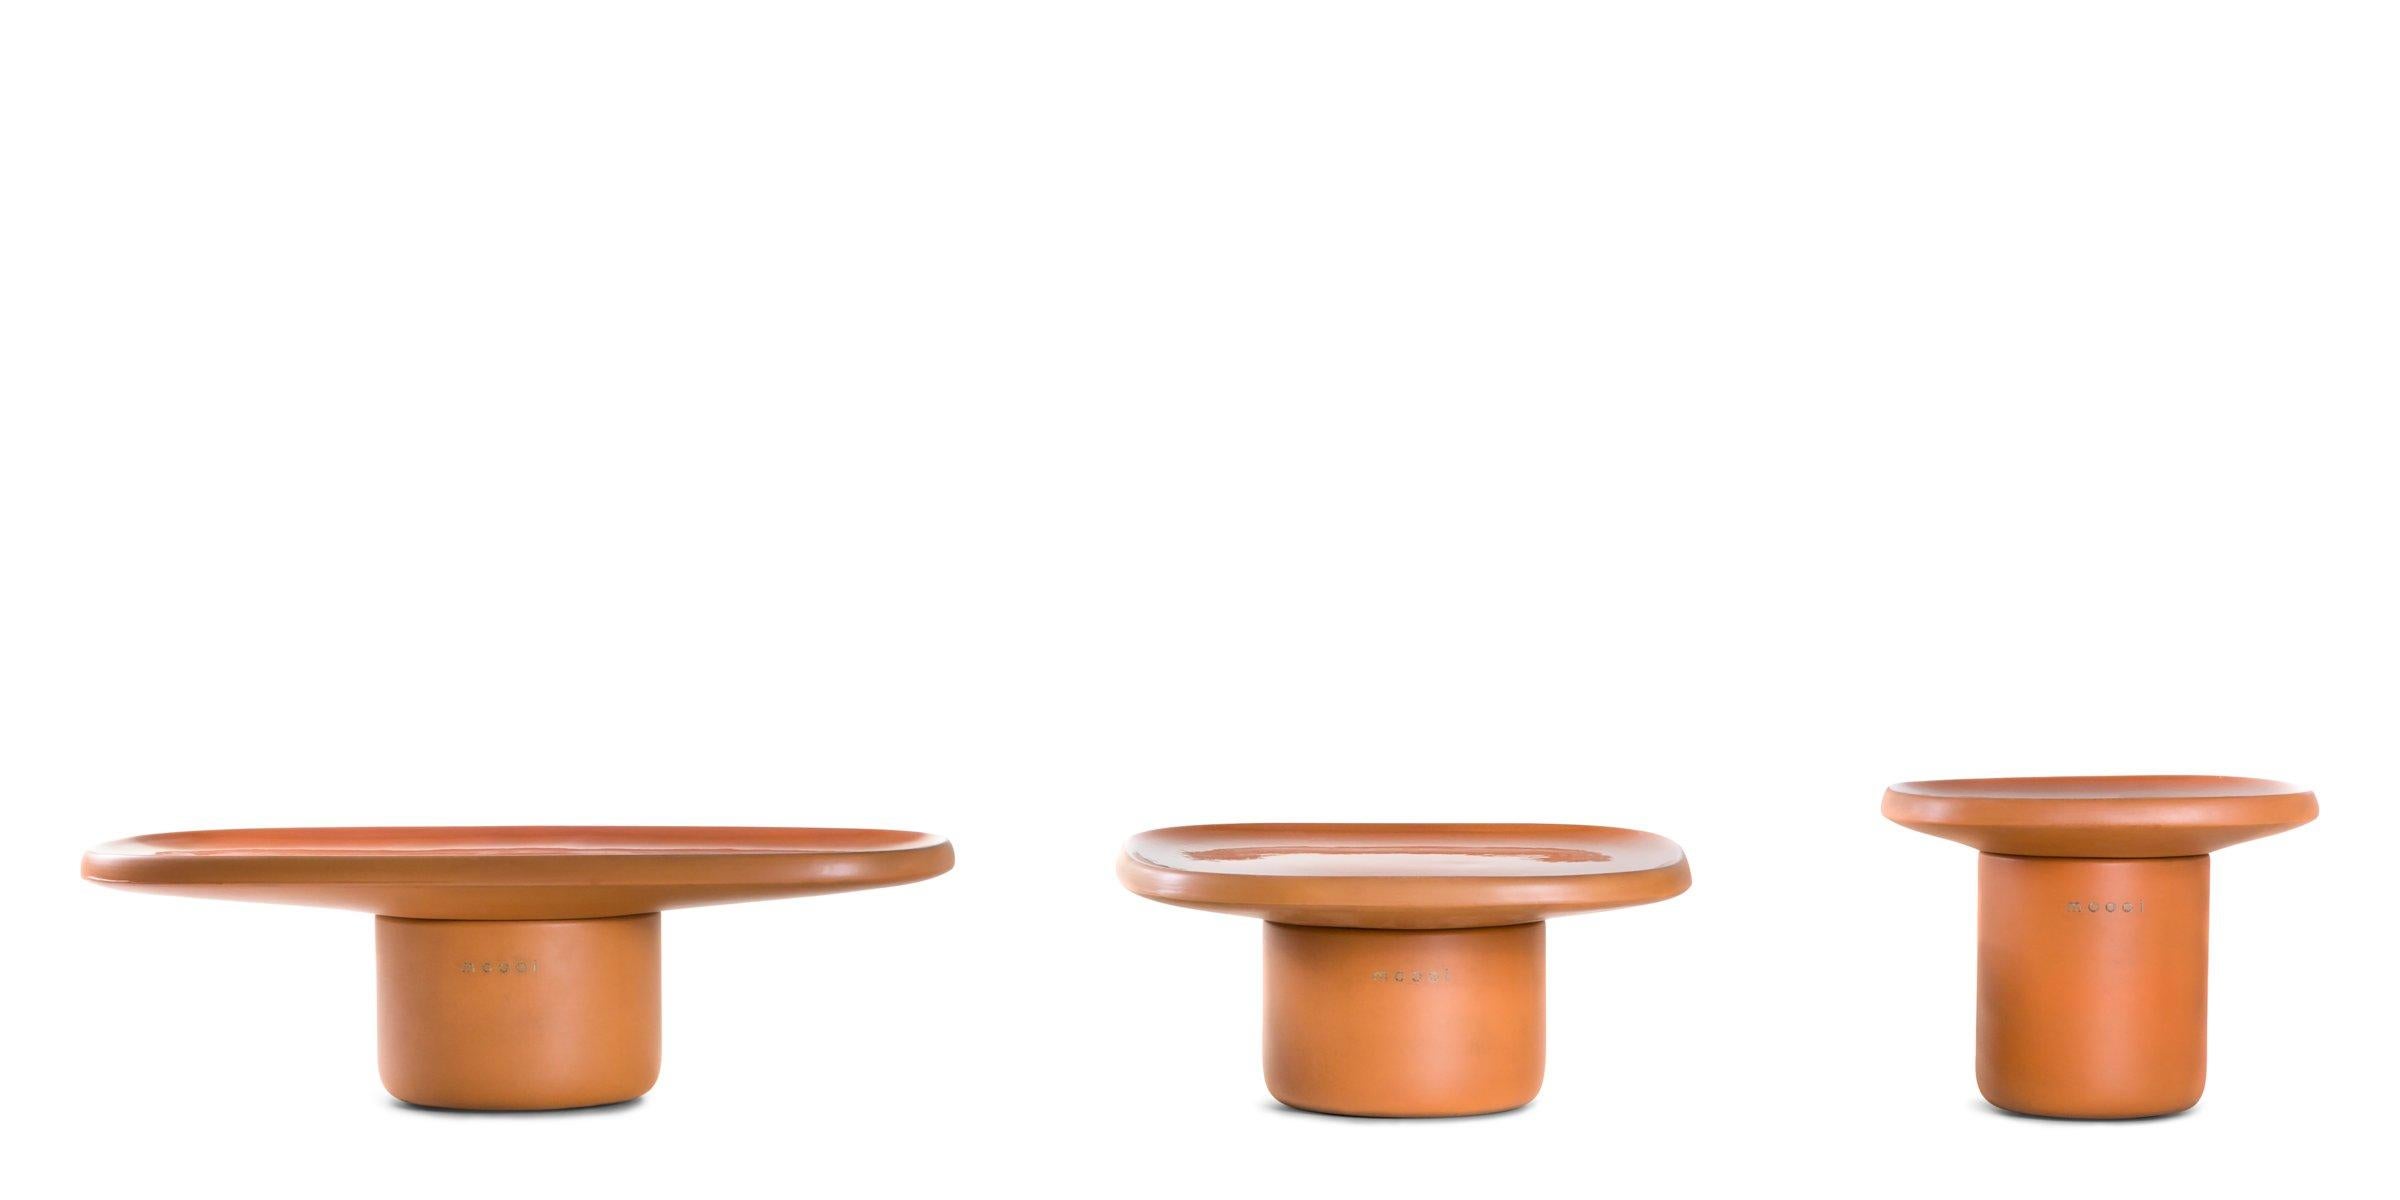 Obon ist eine Kollektion von drei Tischen, die von einem alten, erdigen und unregelmäßigen Material inspiriert sind: Terrakotta. Die Ursprünge der Terrakotta liegen im Nebel der Zeit und bilden die Grundlage für jahrtausendealte archäologische Funde